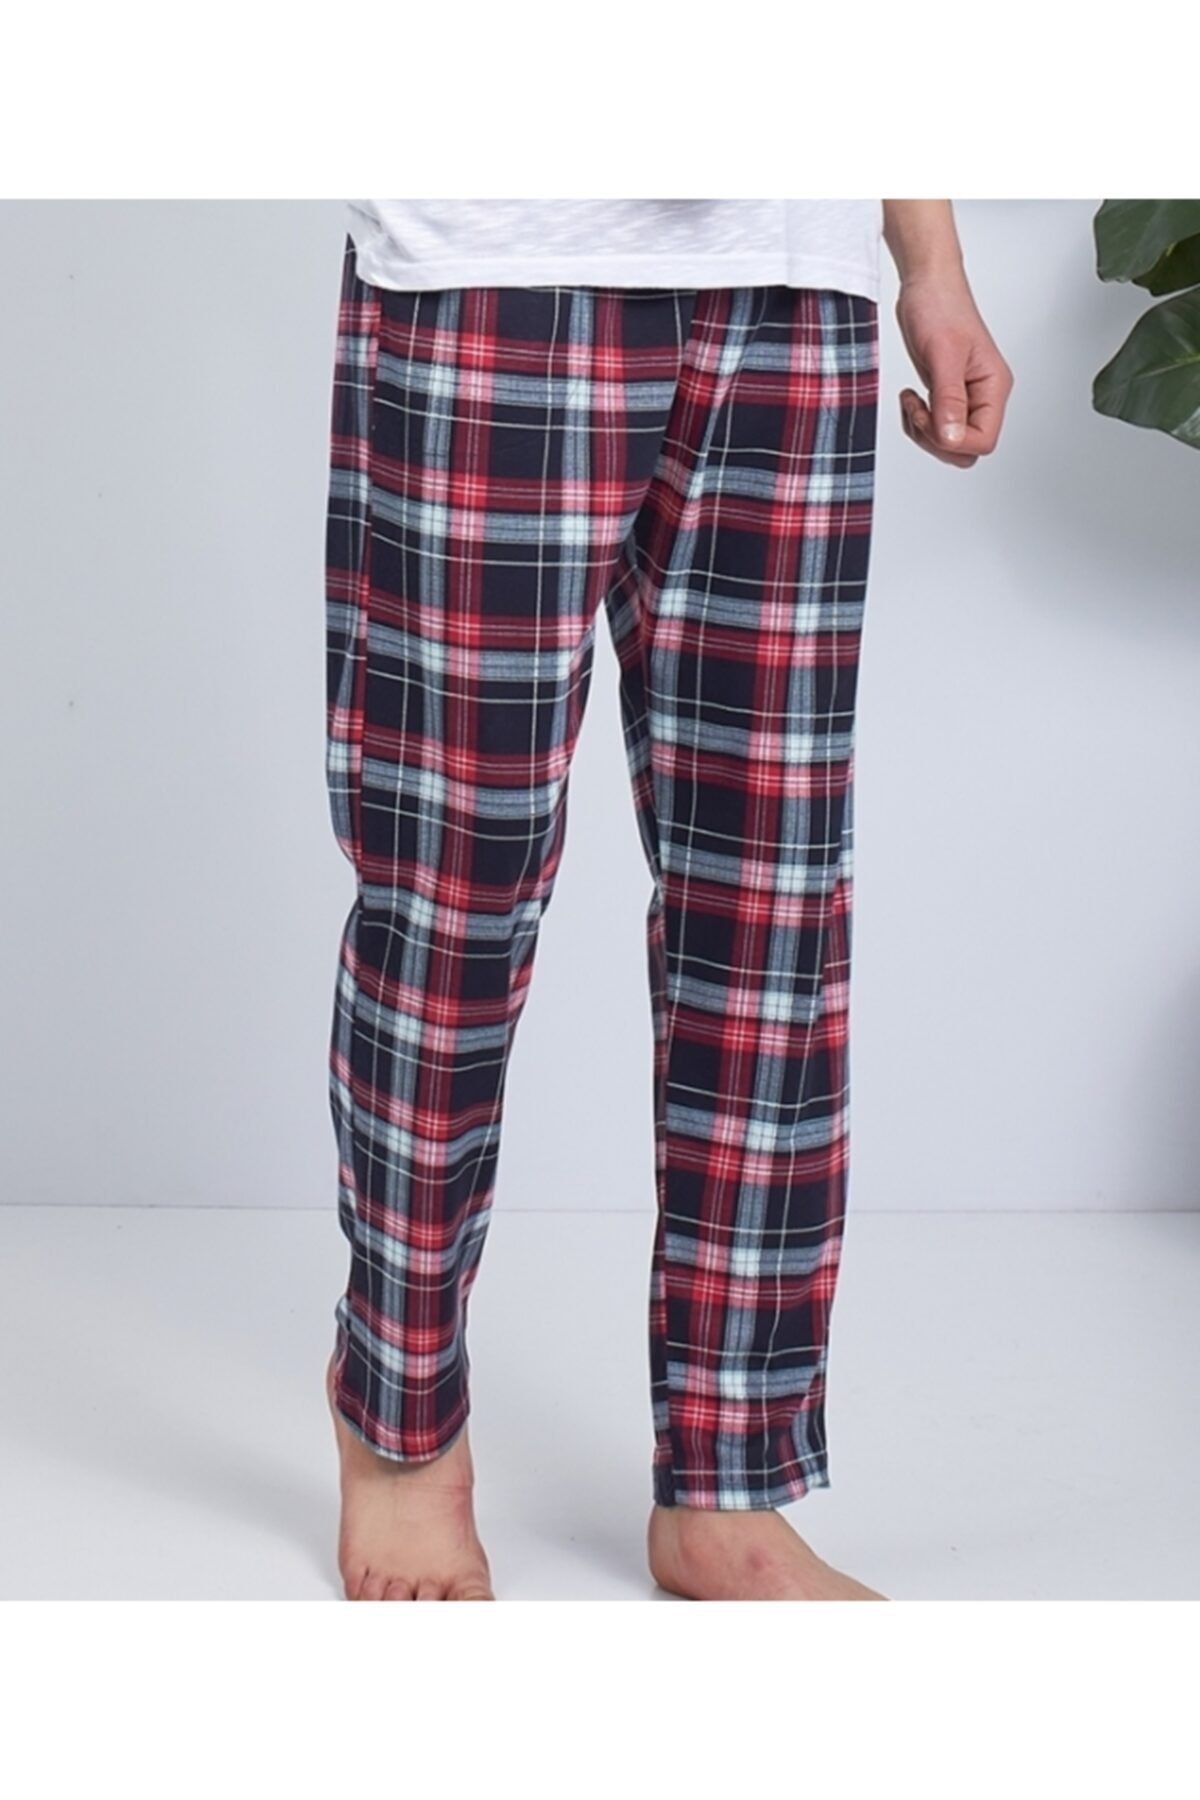 Moda Clubu Kırmzı Ekose Desen Erkek Pijama Altı